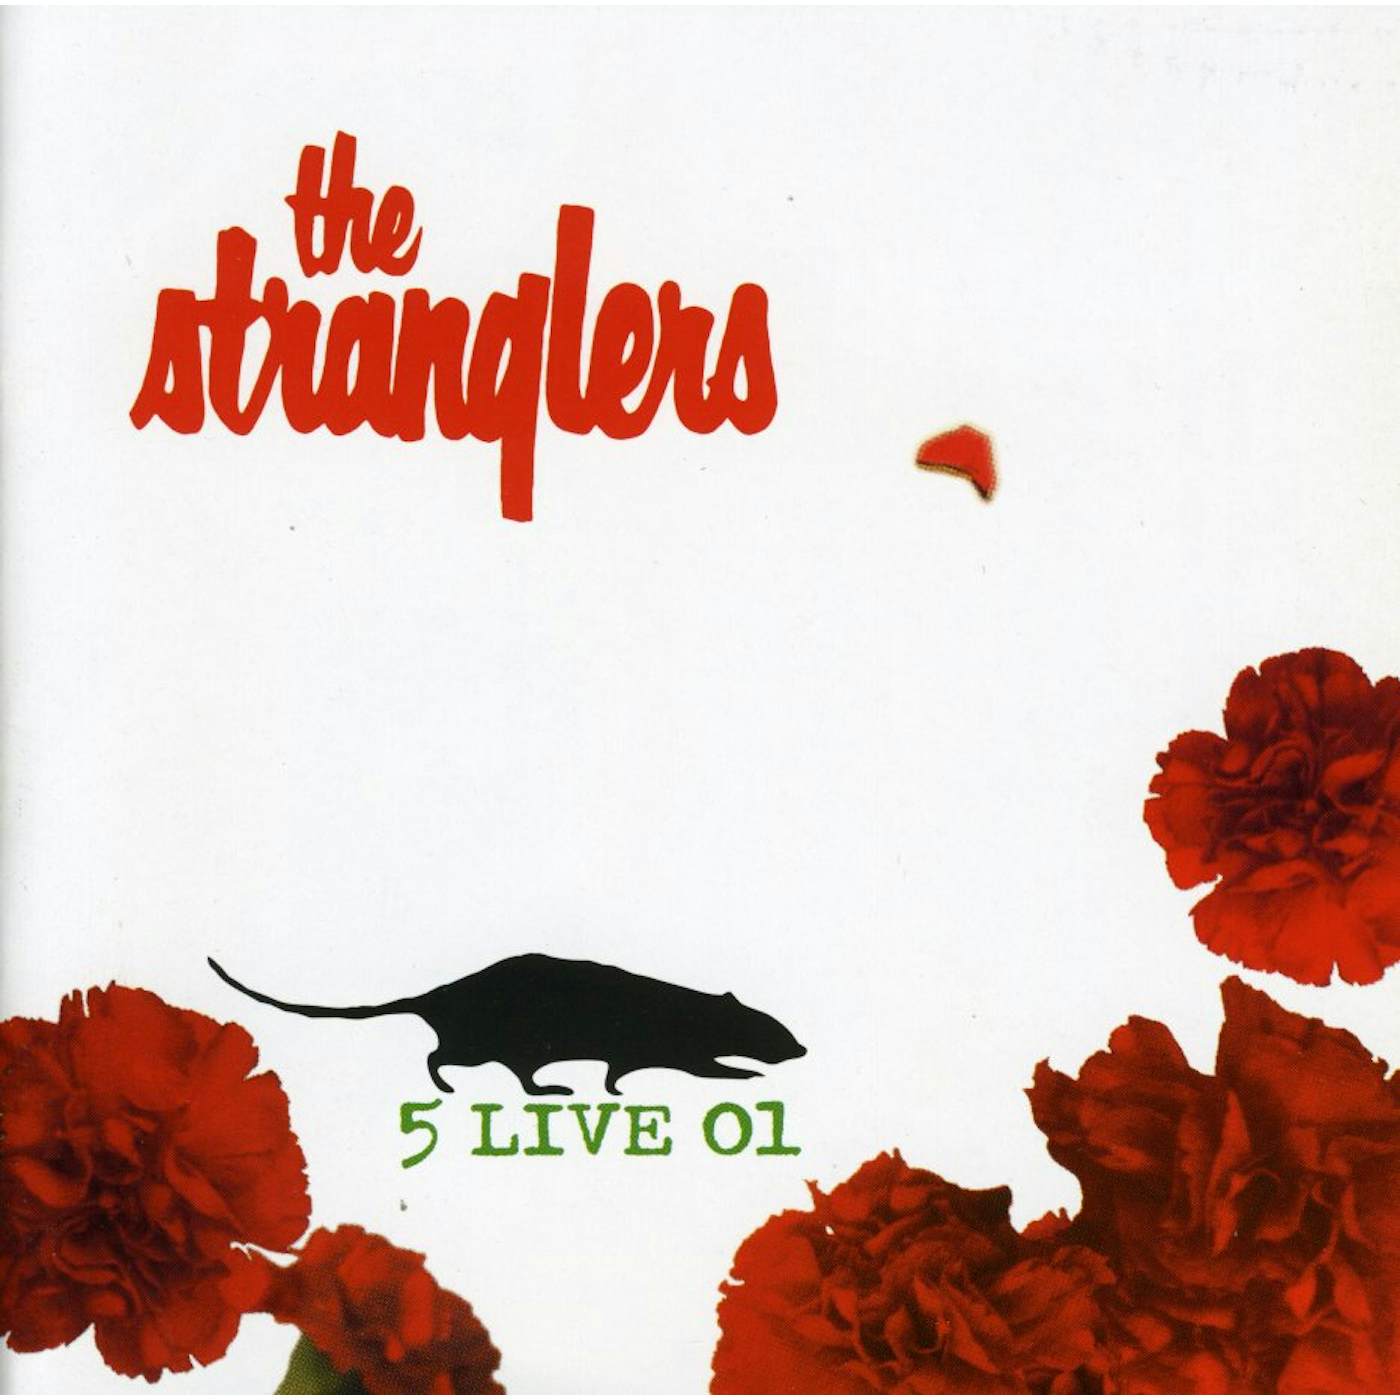 The Stranglers 5 LIVE 01 CD